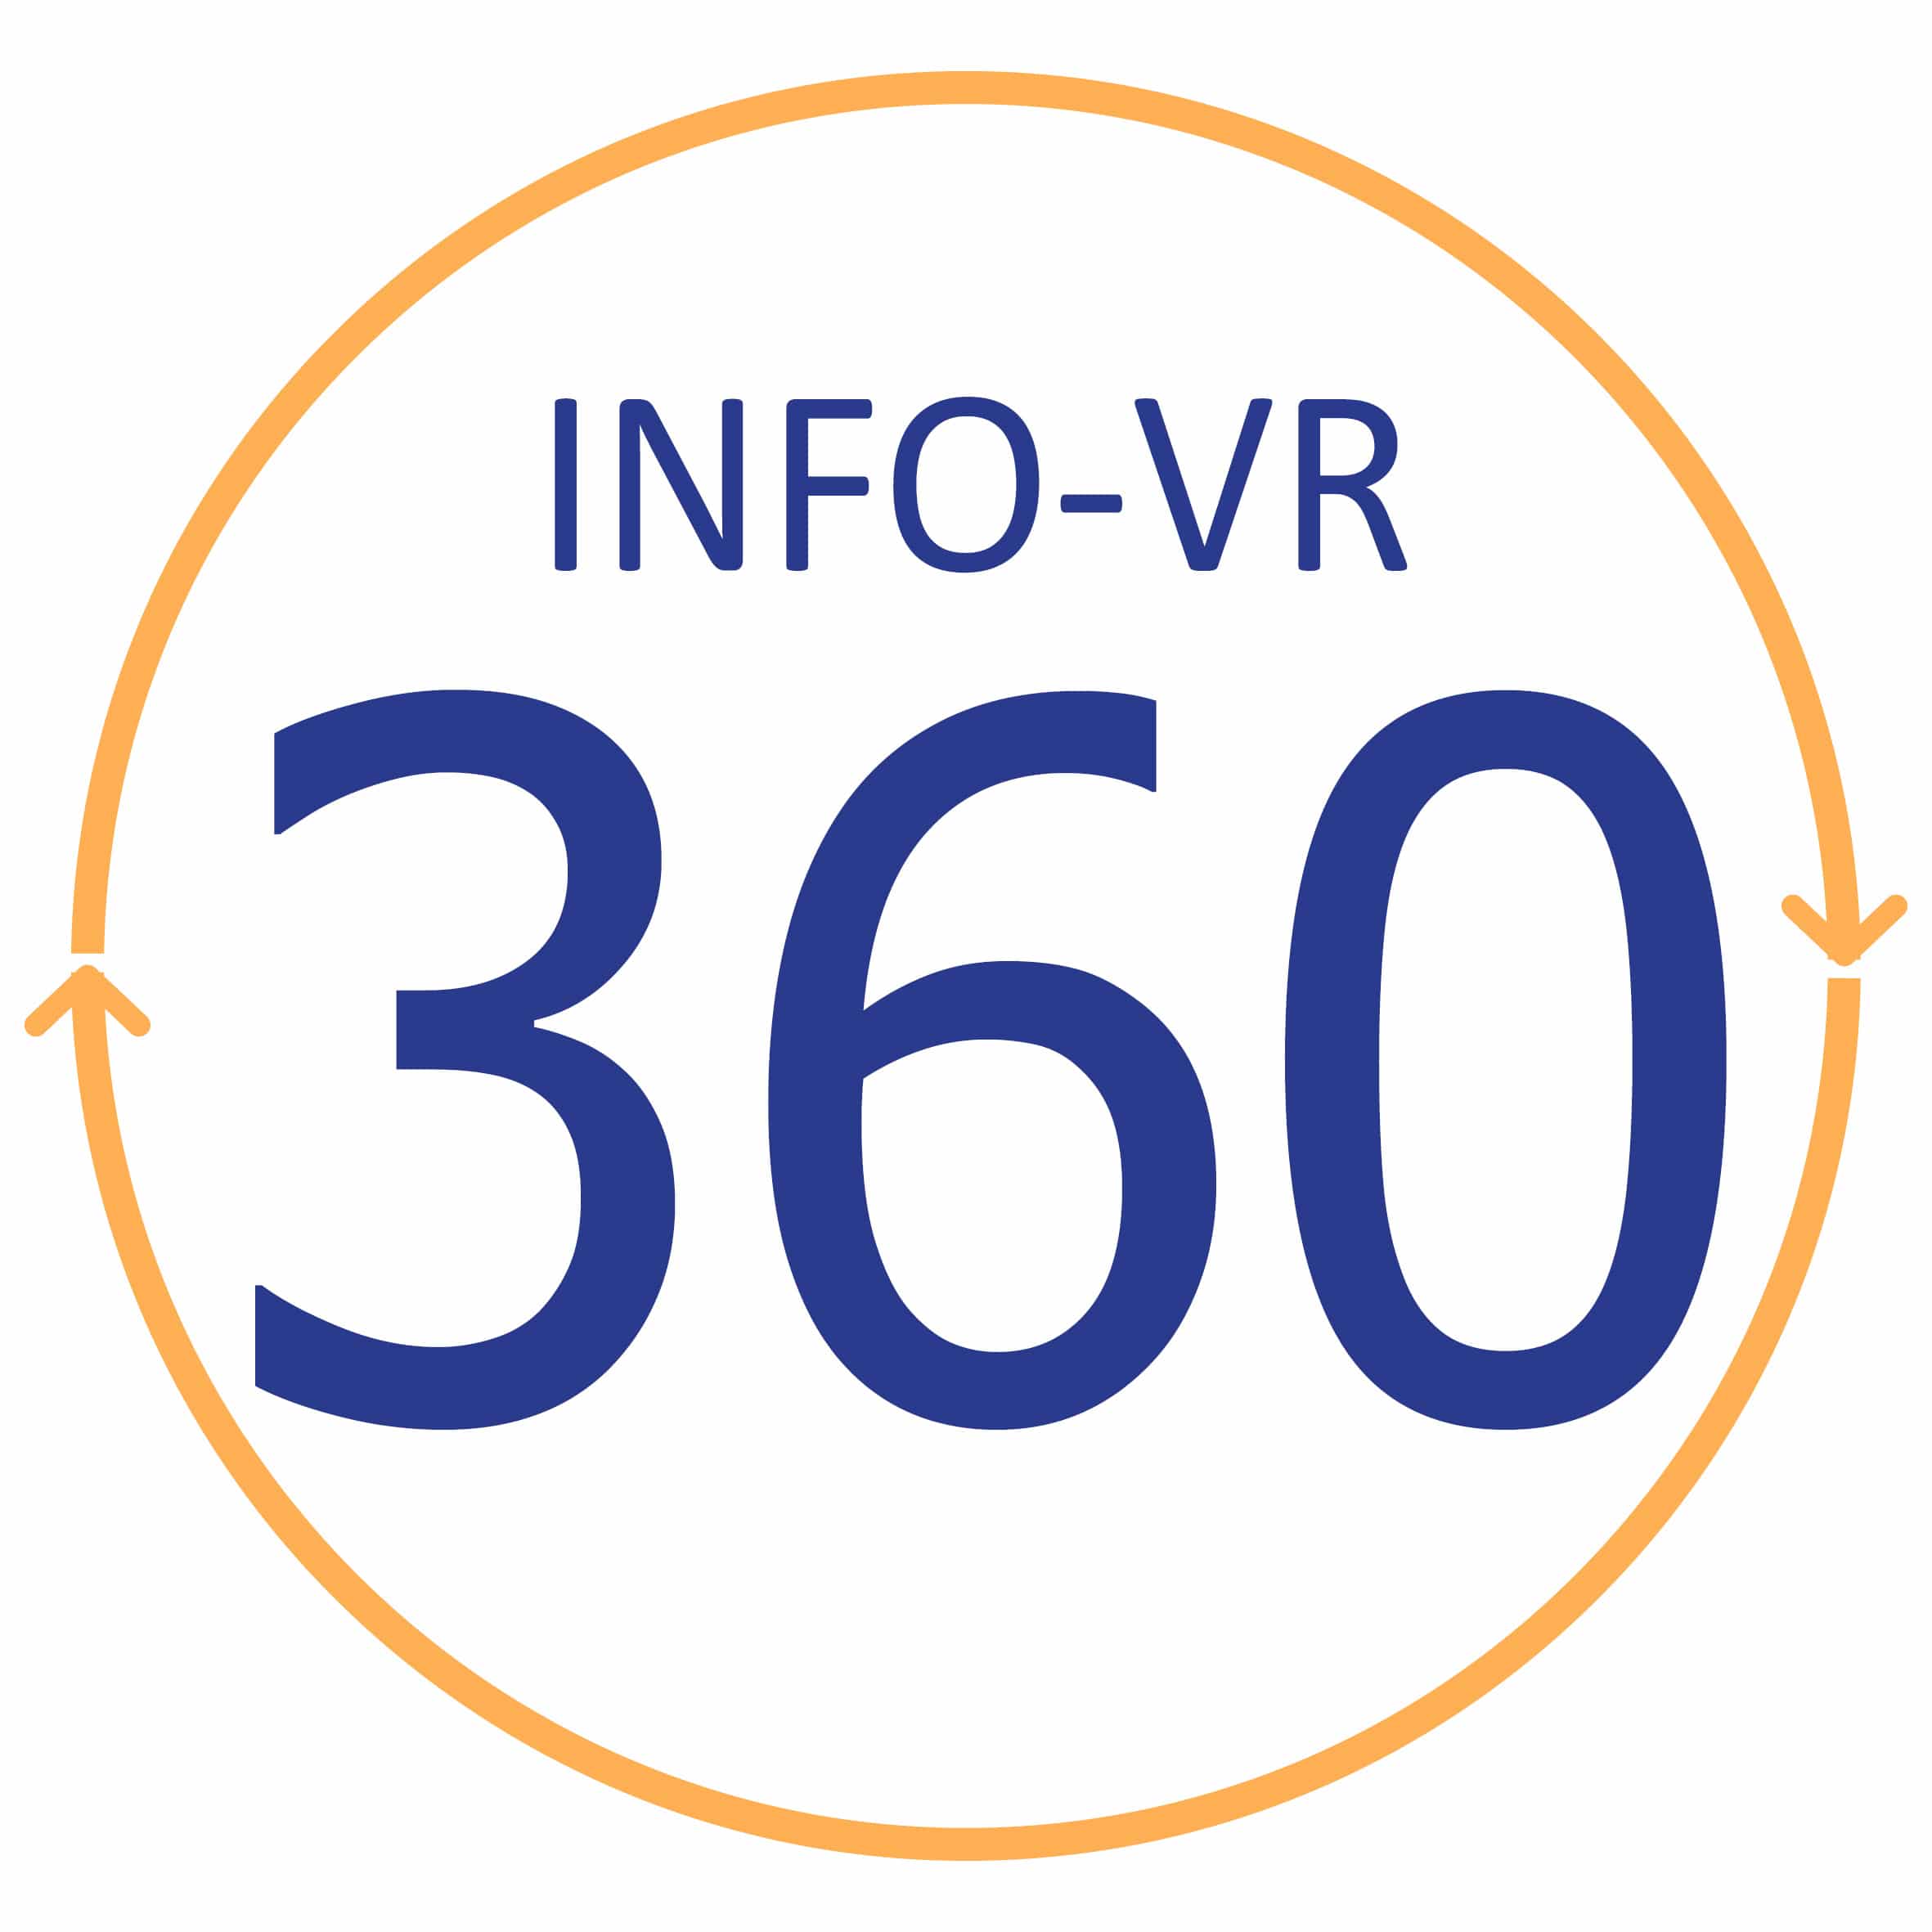 INFO-VR360